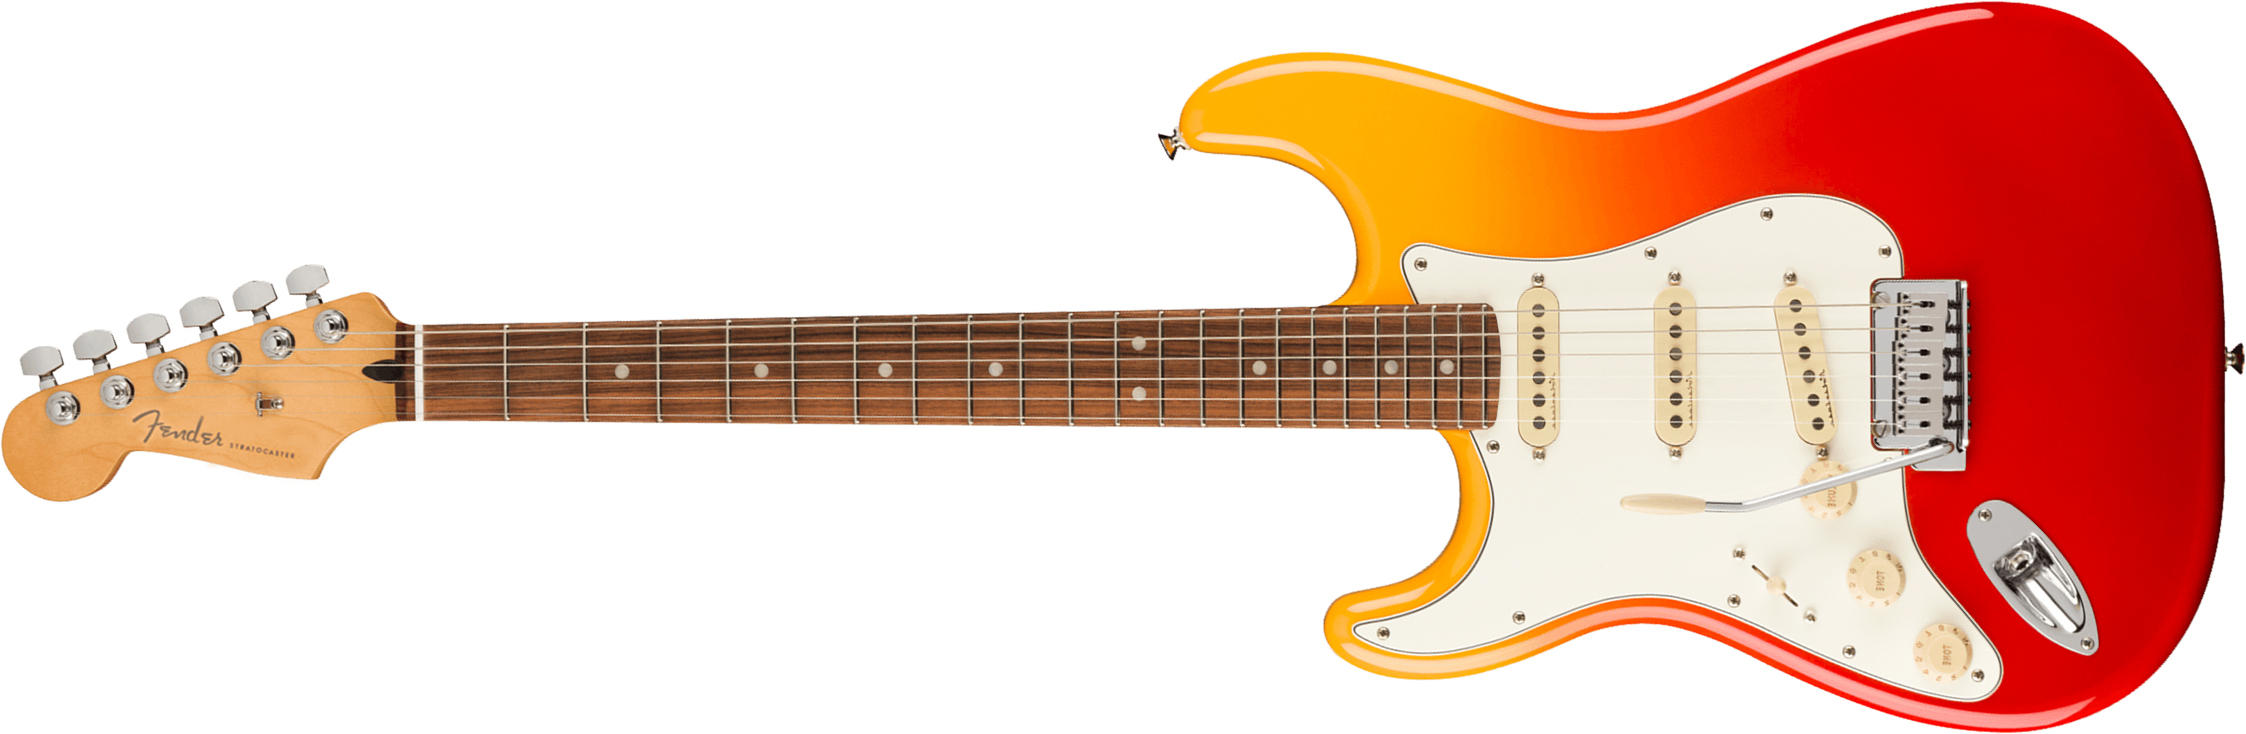 Fender Strat Player Plus Lh Gaucher Mex 3s Trem Pf - Tequila Sunrise - Guitarra electrica para zurdos - Main picture